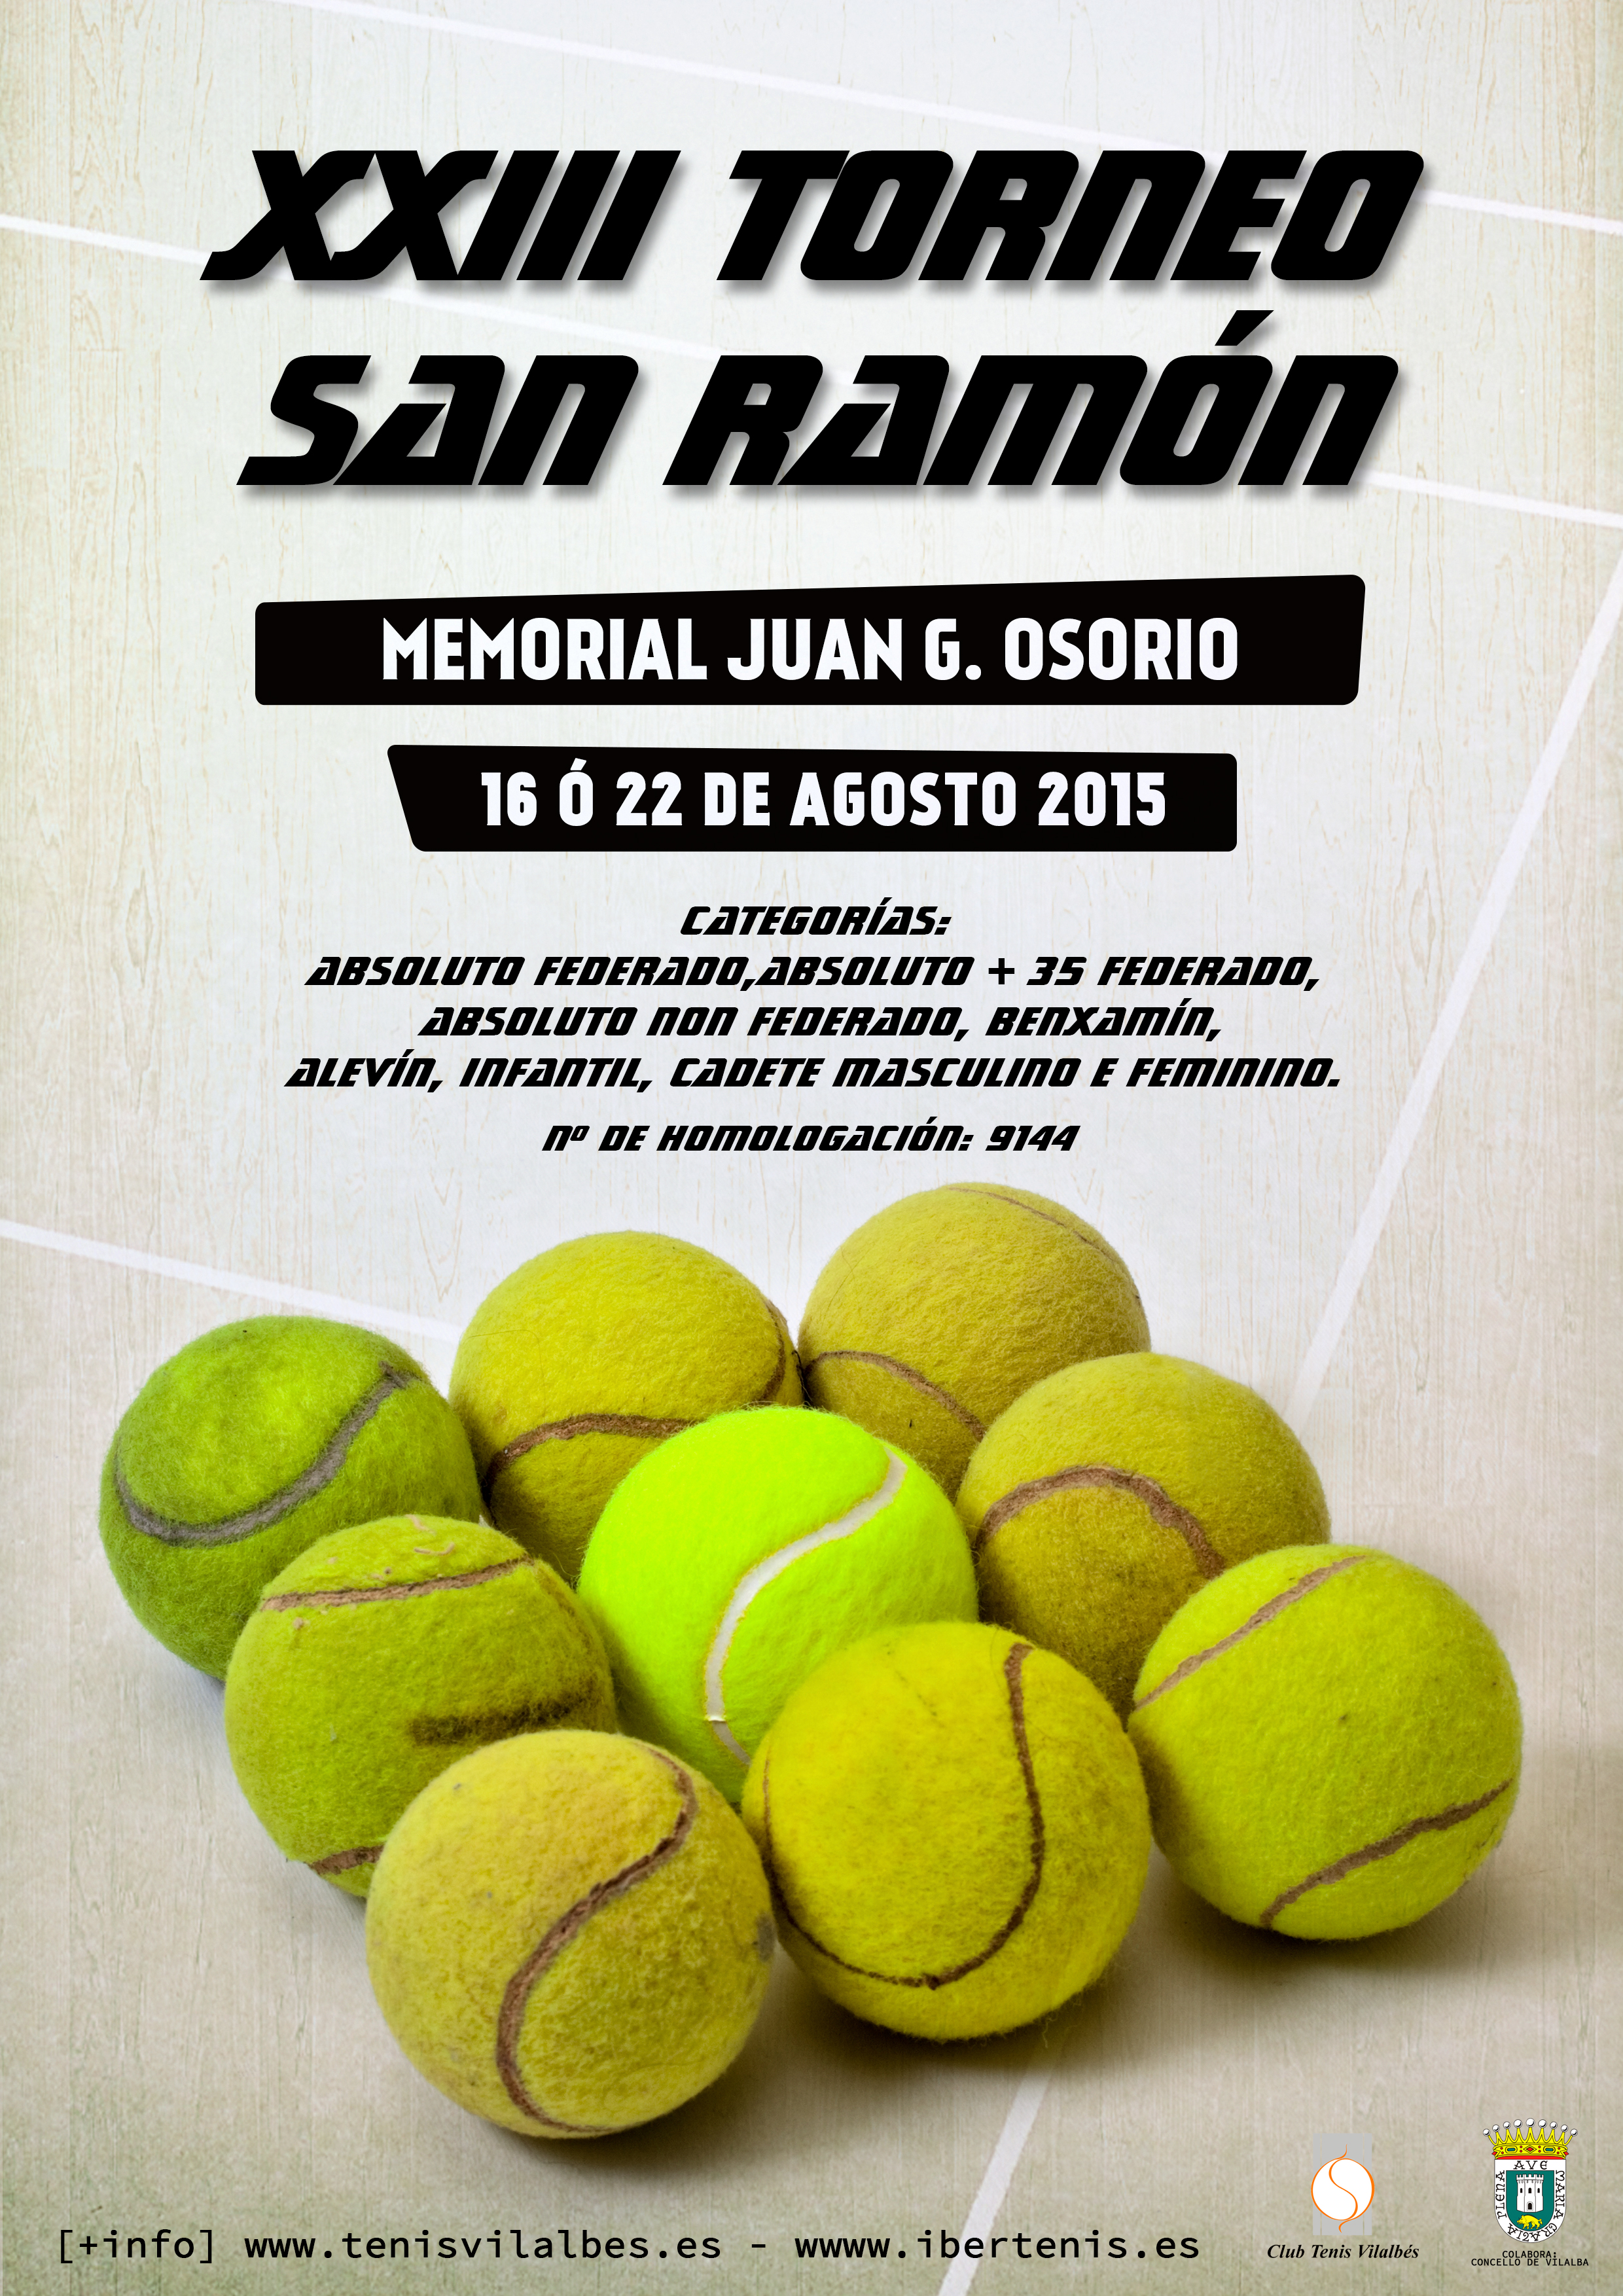 Cartel del XXIII TORNEO SAN RAMON 2015-Memorial Juan Gonzalez Osorio